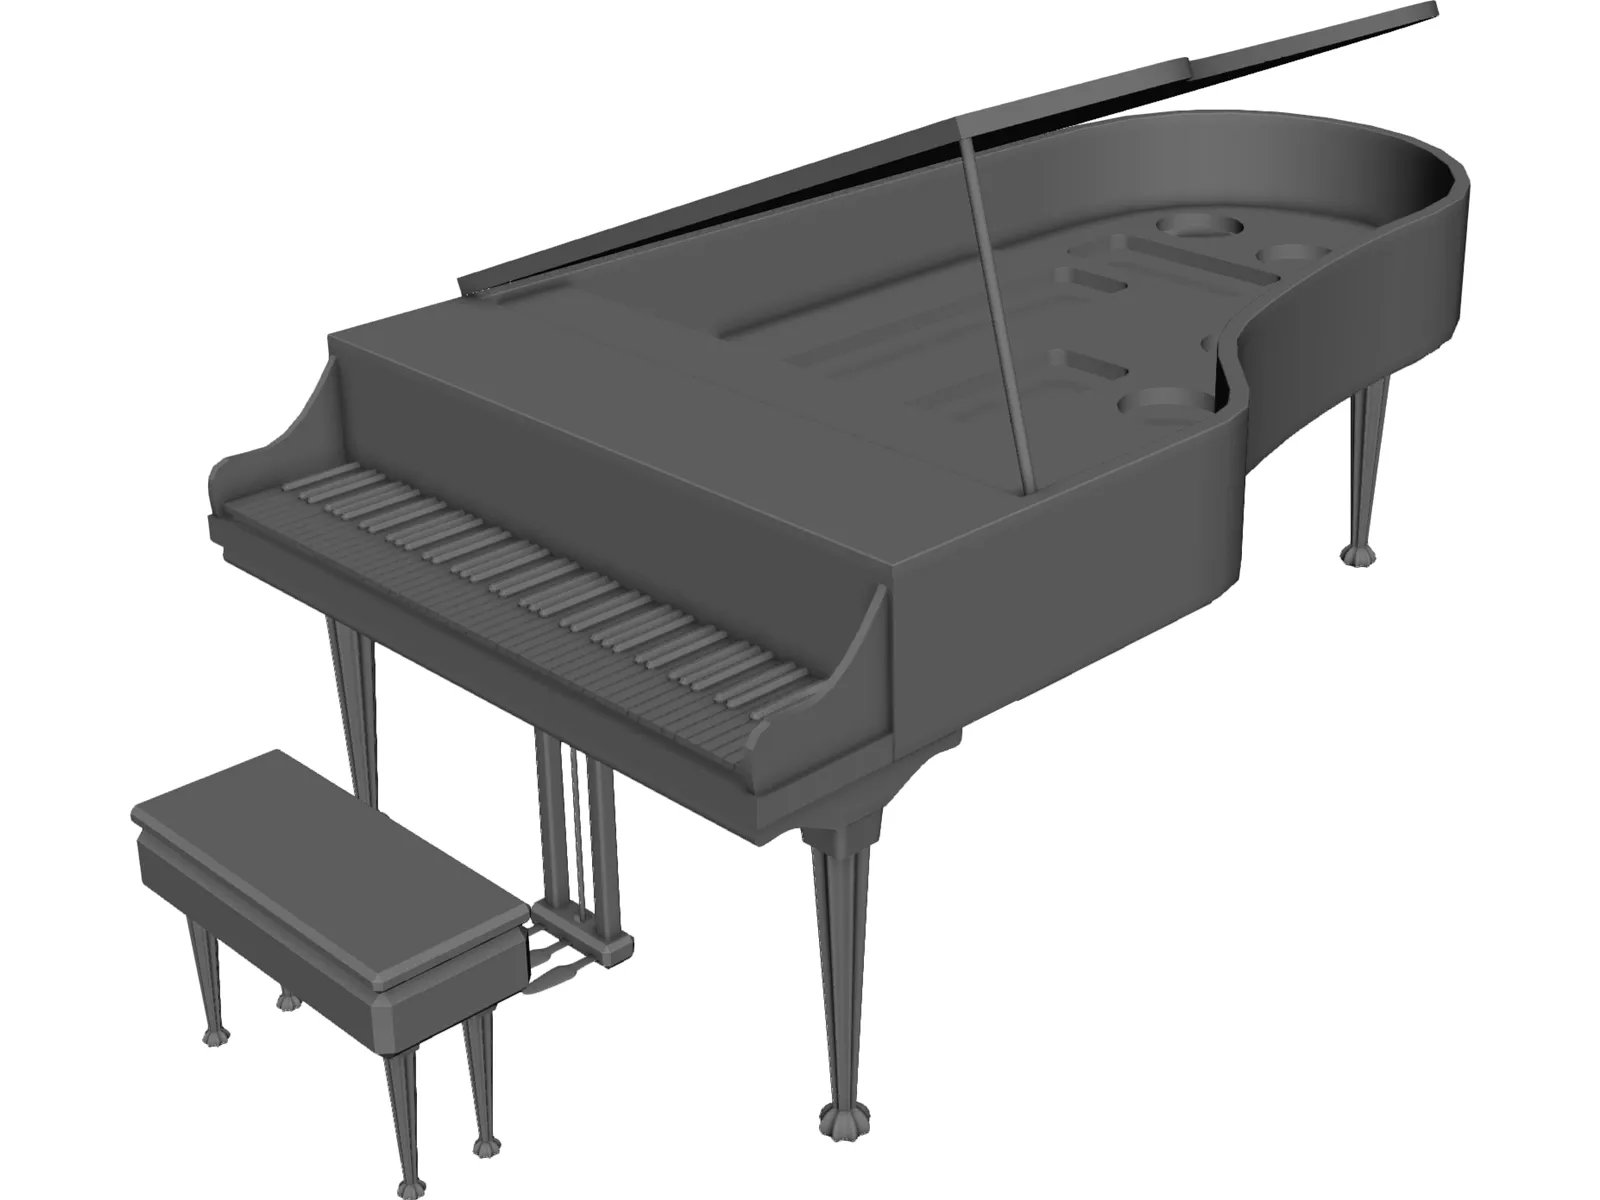 Classic Piano 3D Model